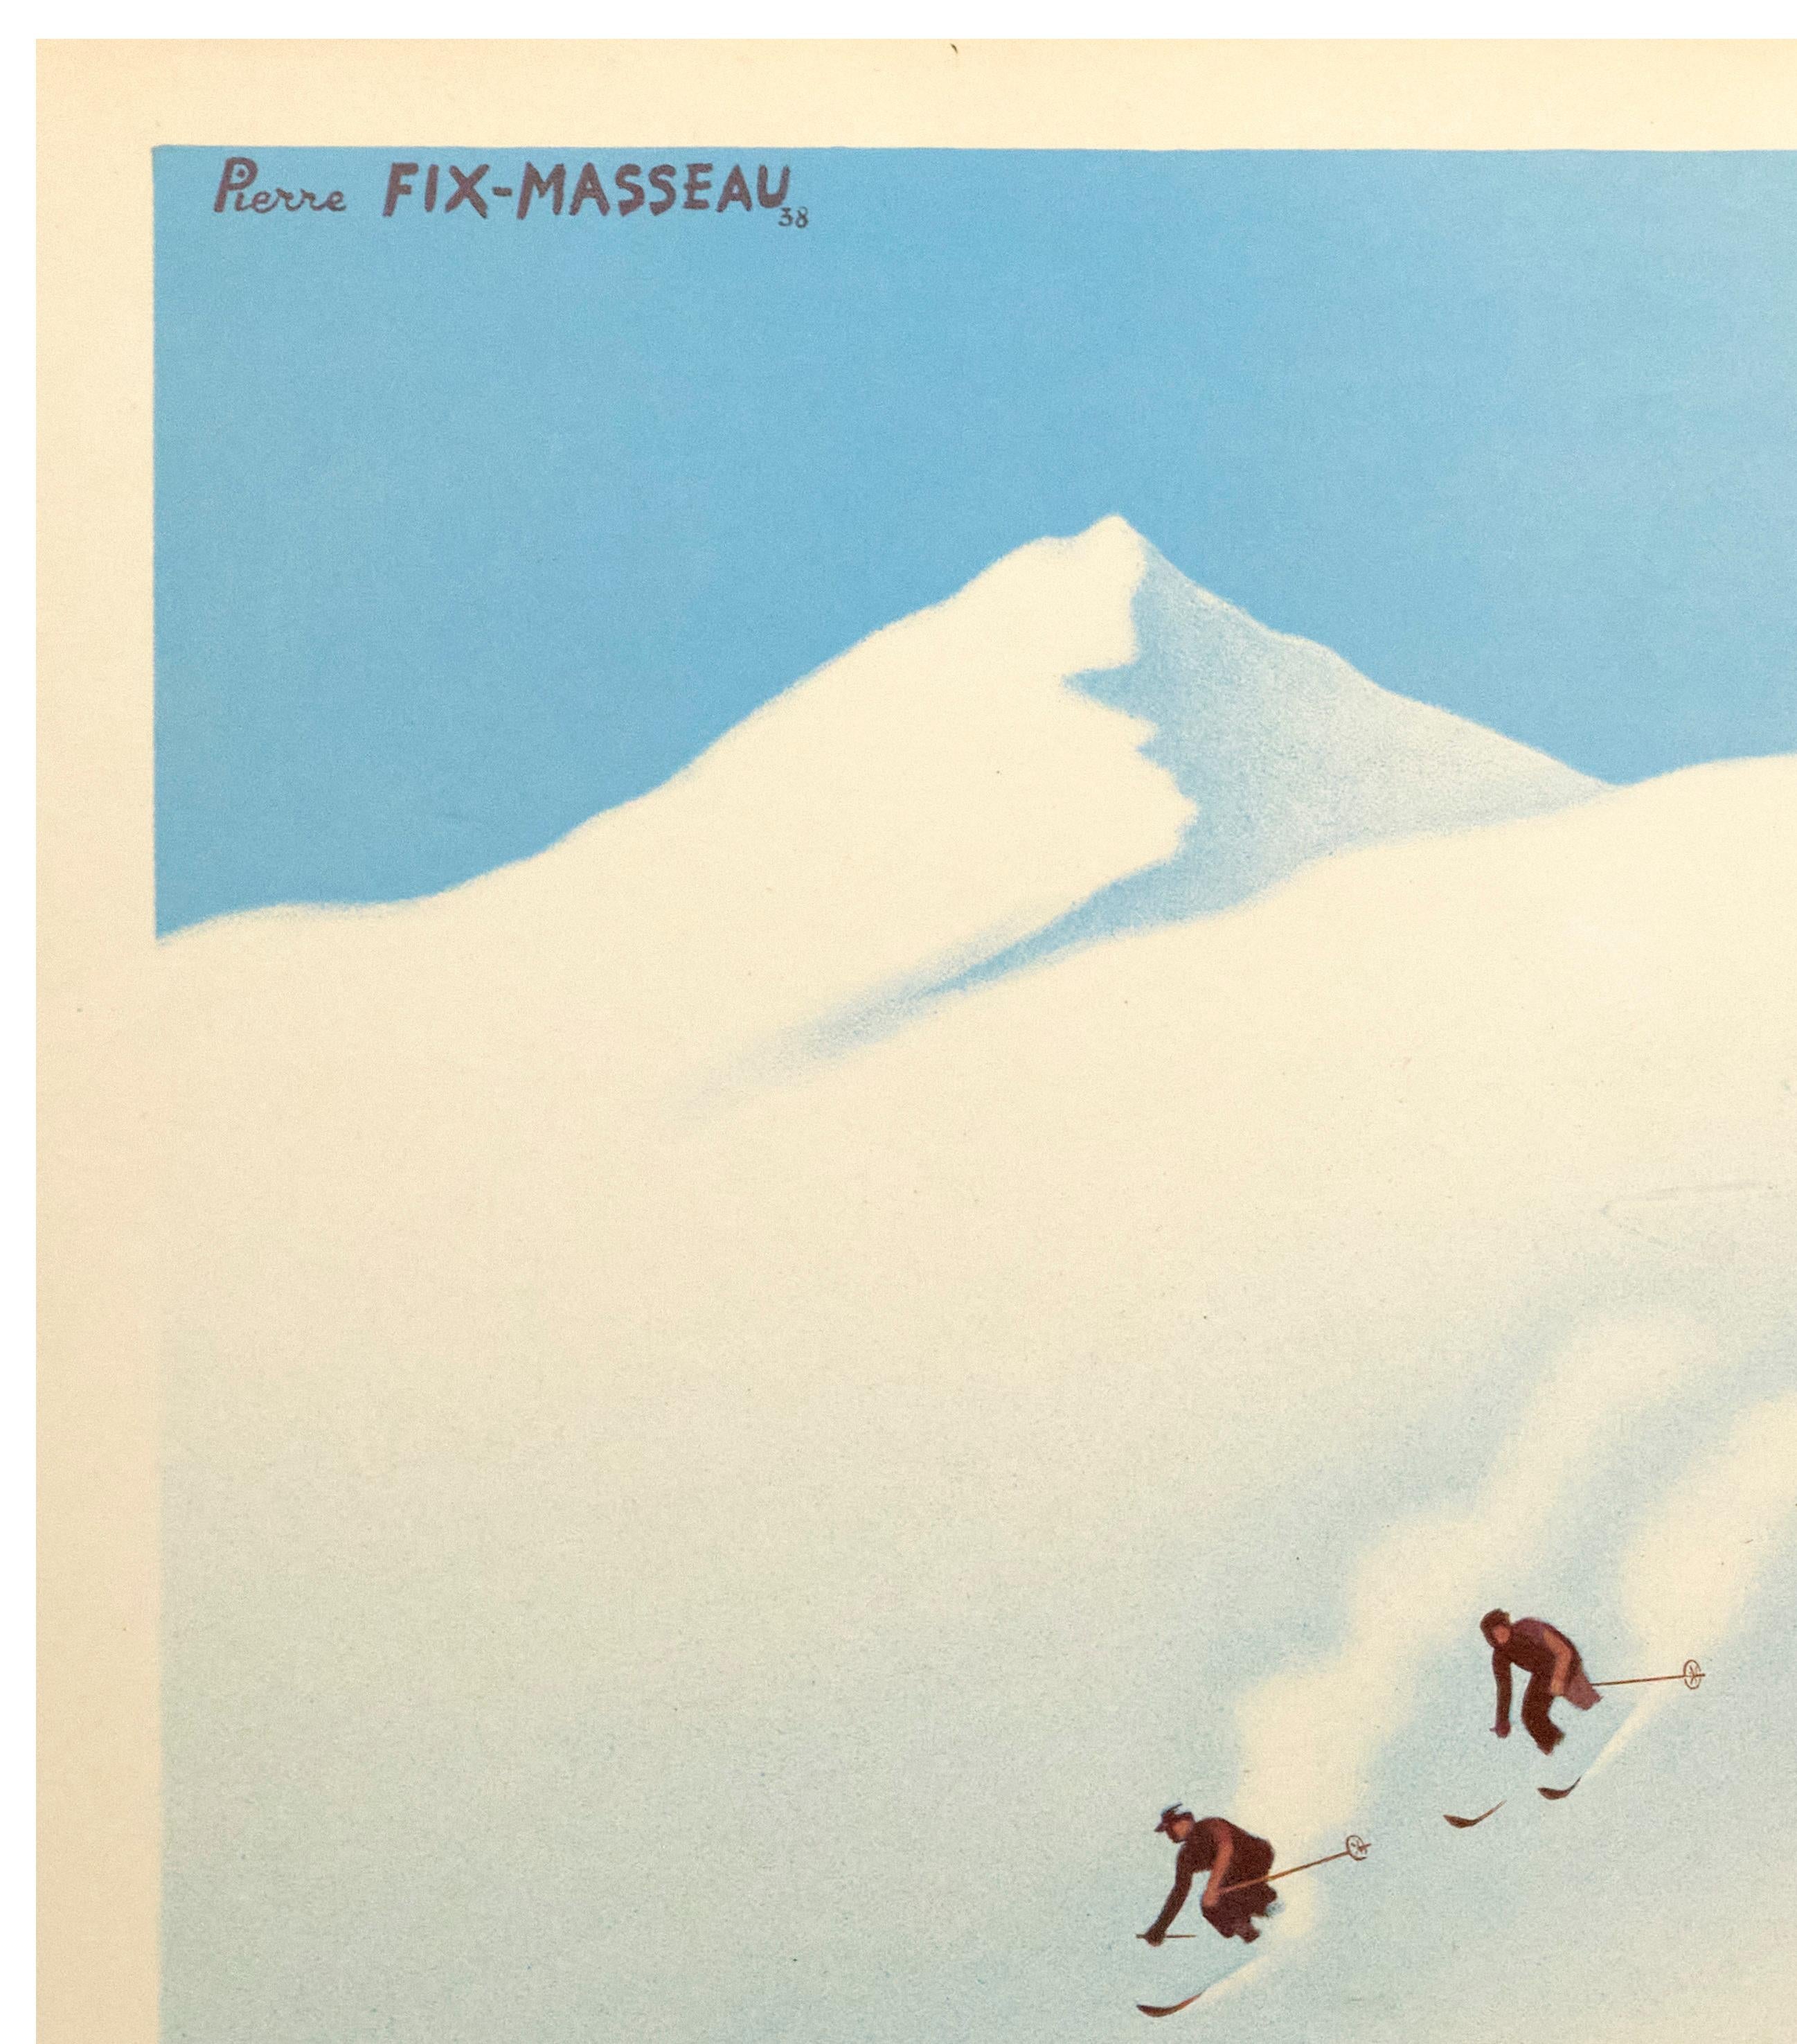 Poster for the Société Nationale des Chemins de Fer Français (SNCF) produced by Pierre Fix-Masseau in 1938 to promote winter tourism to mountainous destinations in France.

Artist: Fix-Masseau Pierre (1905-1994)
Title: Bon Voyage – Bonne Neige -